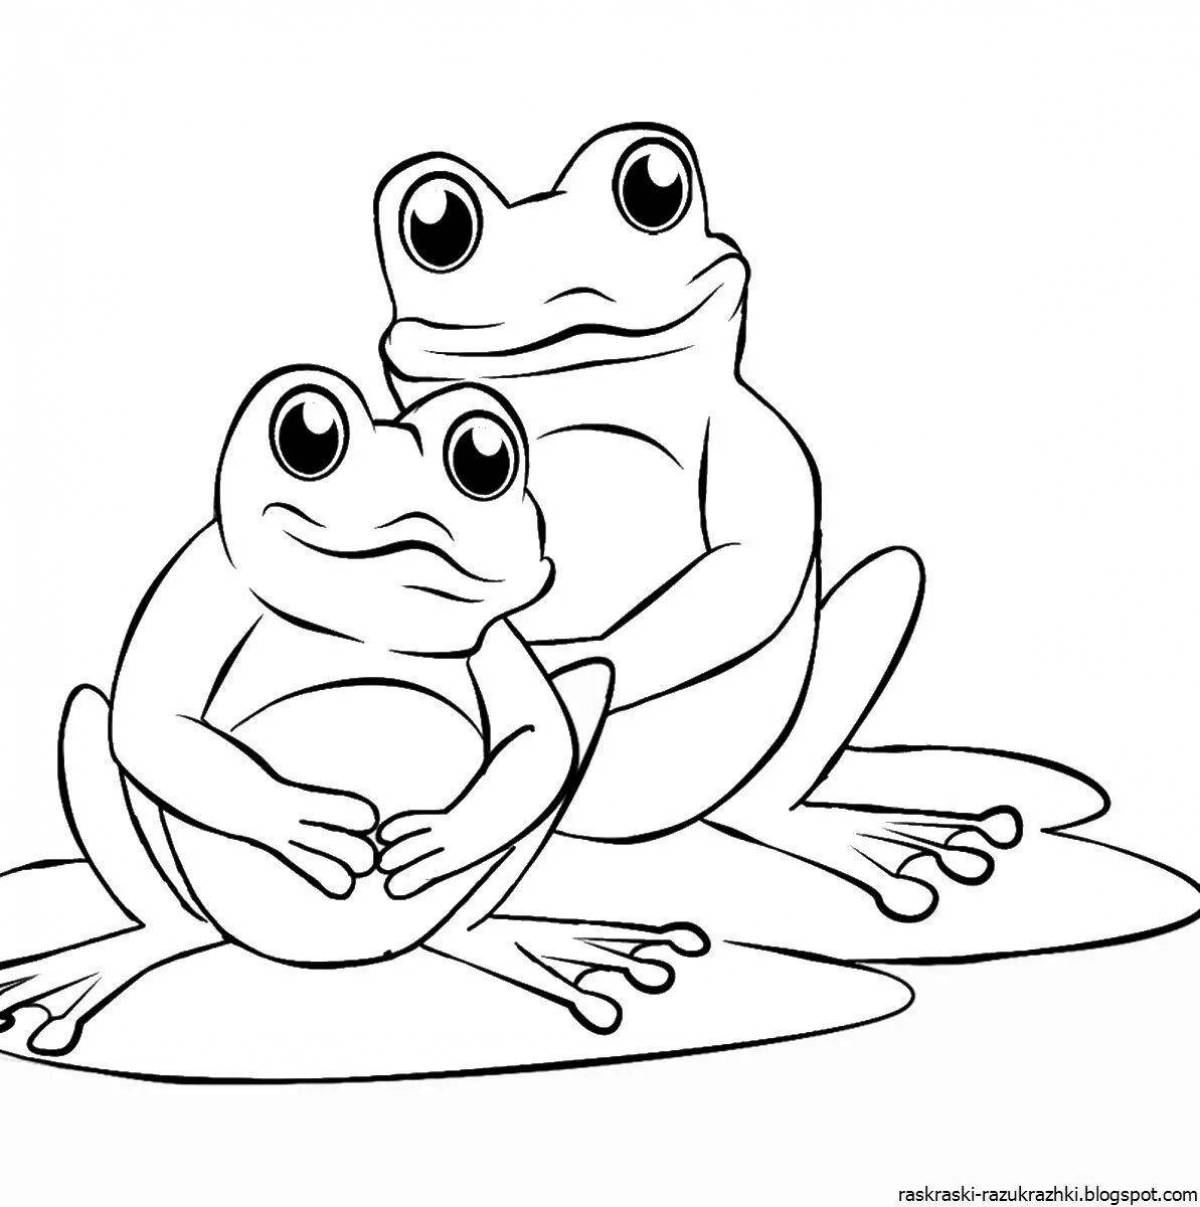 Impressive frog coloring book for kids